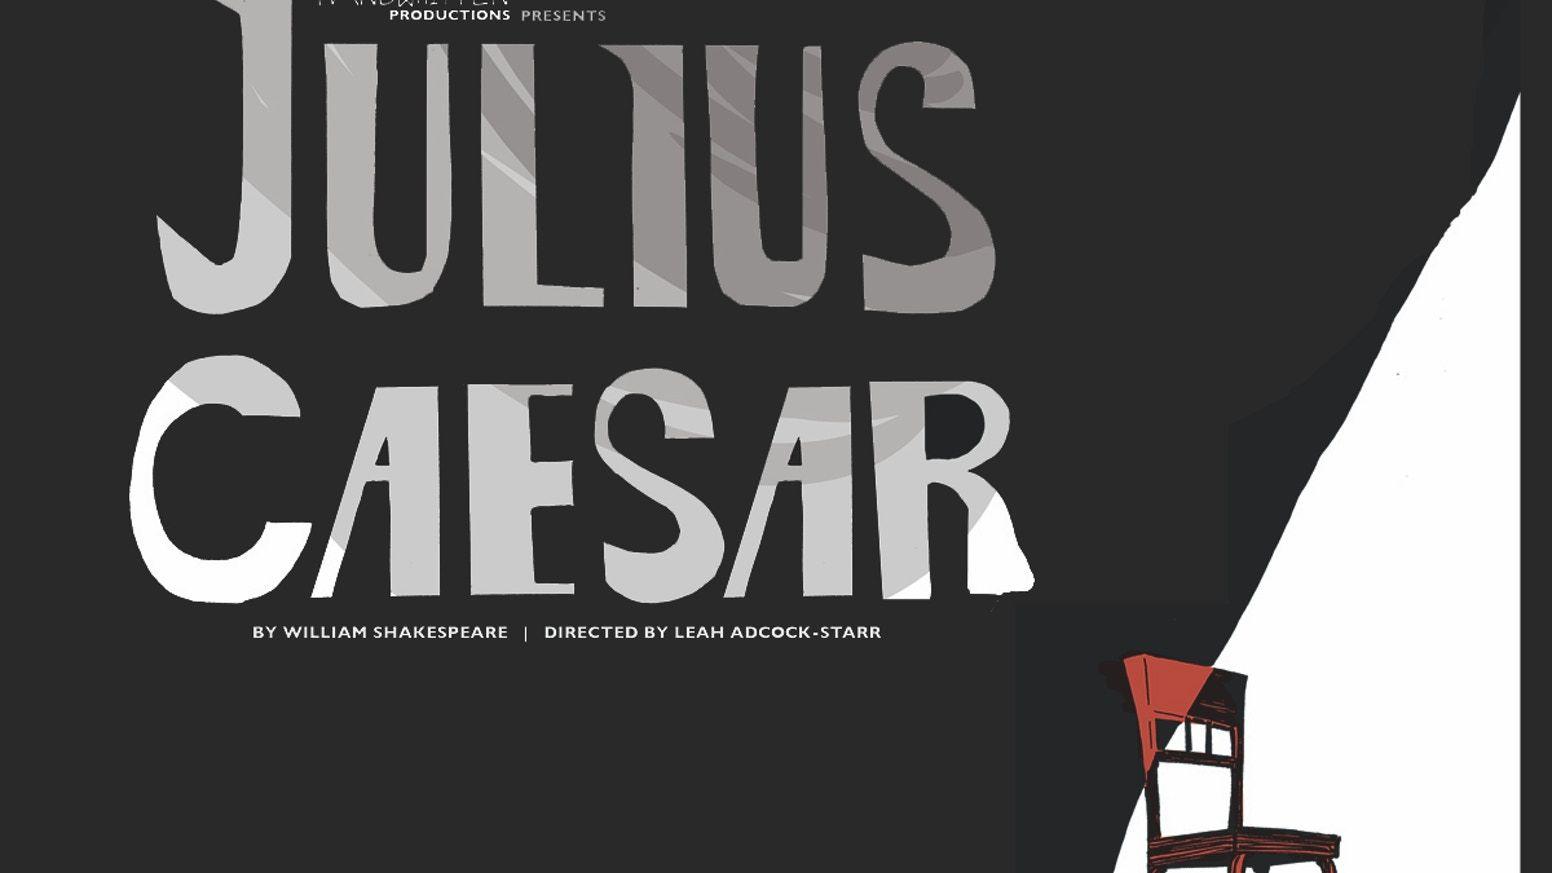 Julius Caesar Logo - Handwritten Productions Presents JULIUS CAESAR